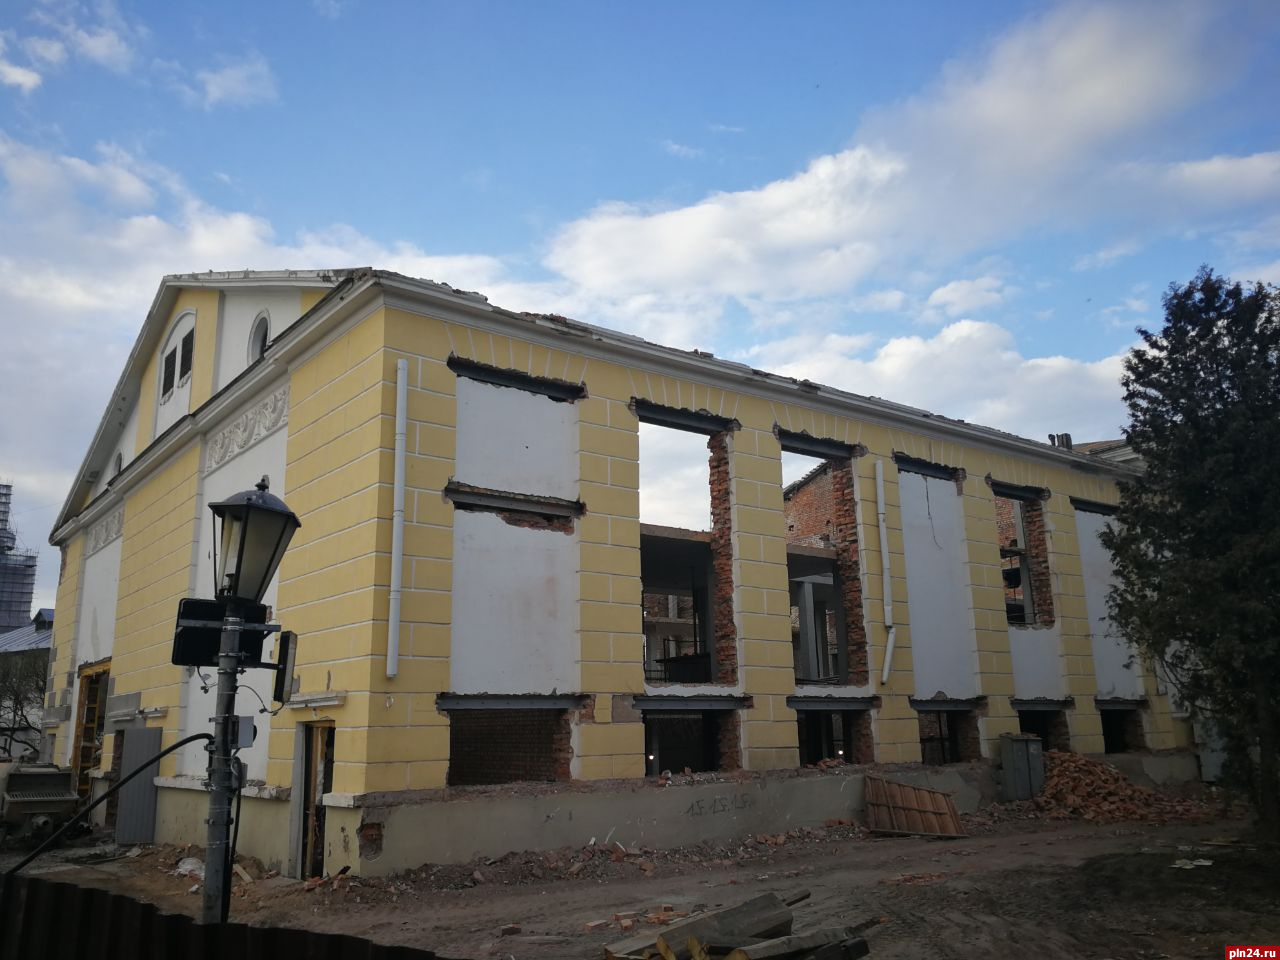 Фотофакт: В стенах бывшего кинотеатра «Октябрь» в Пскове появились большие проемы